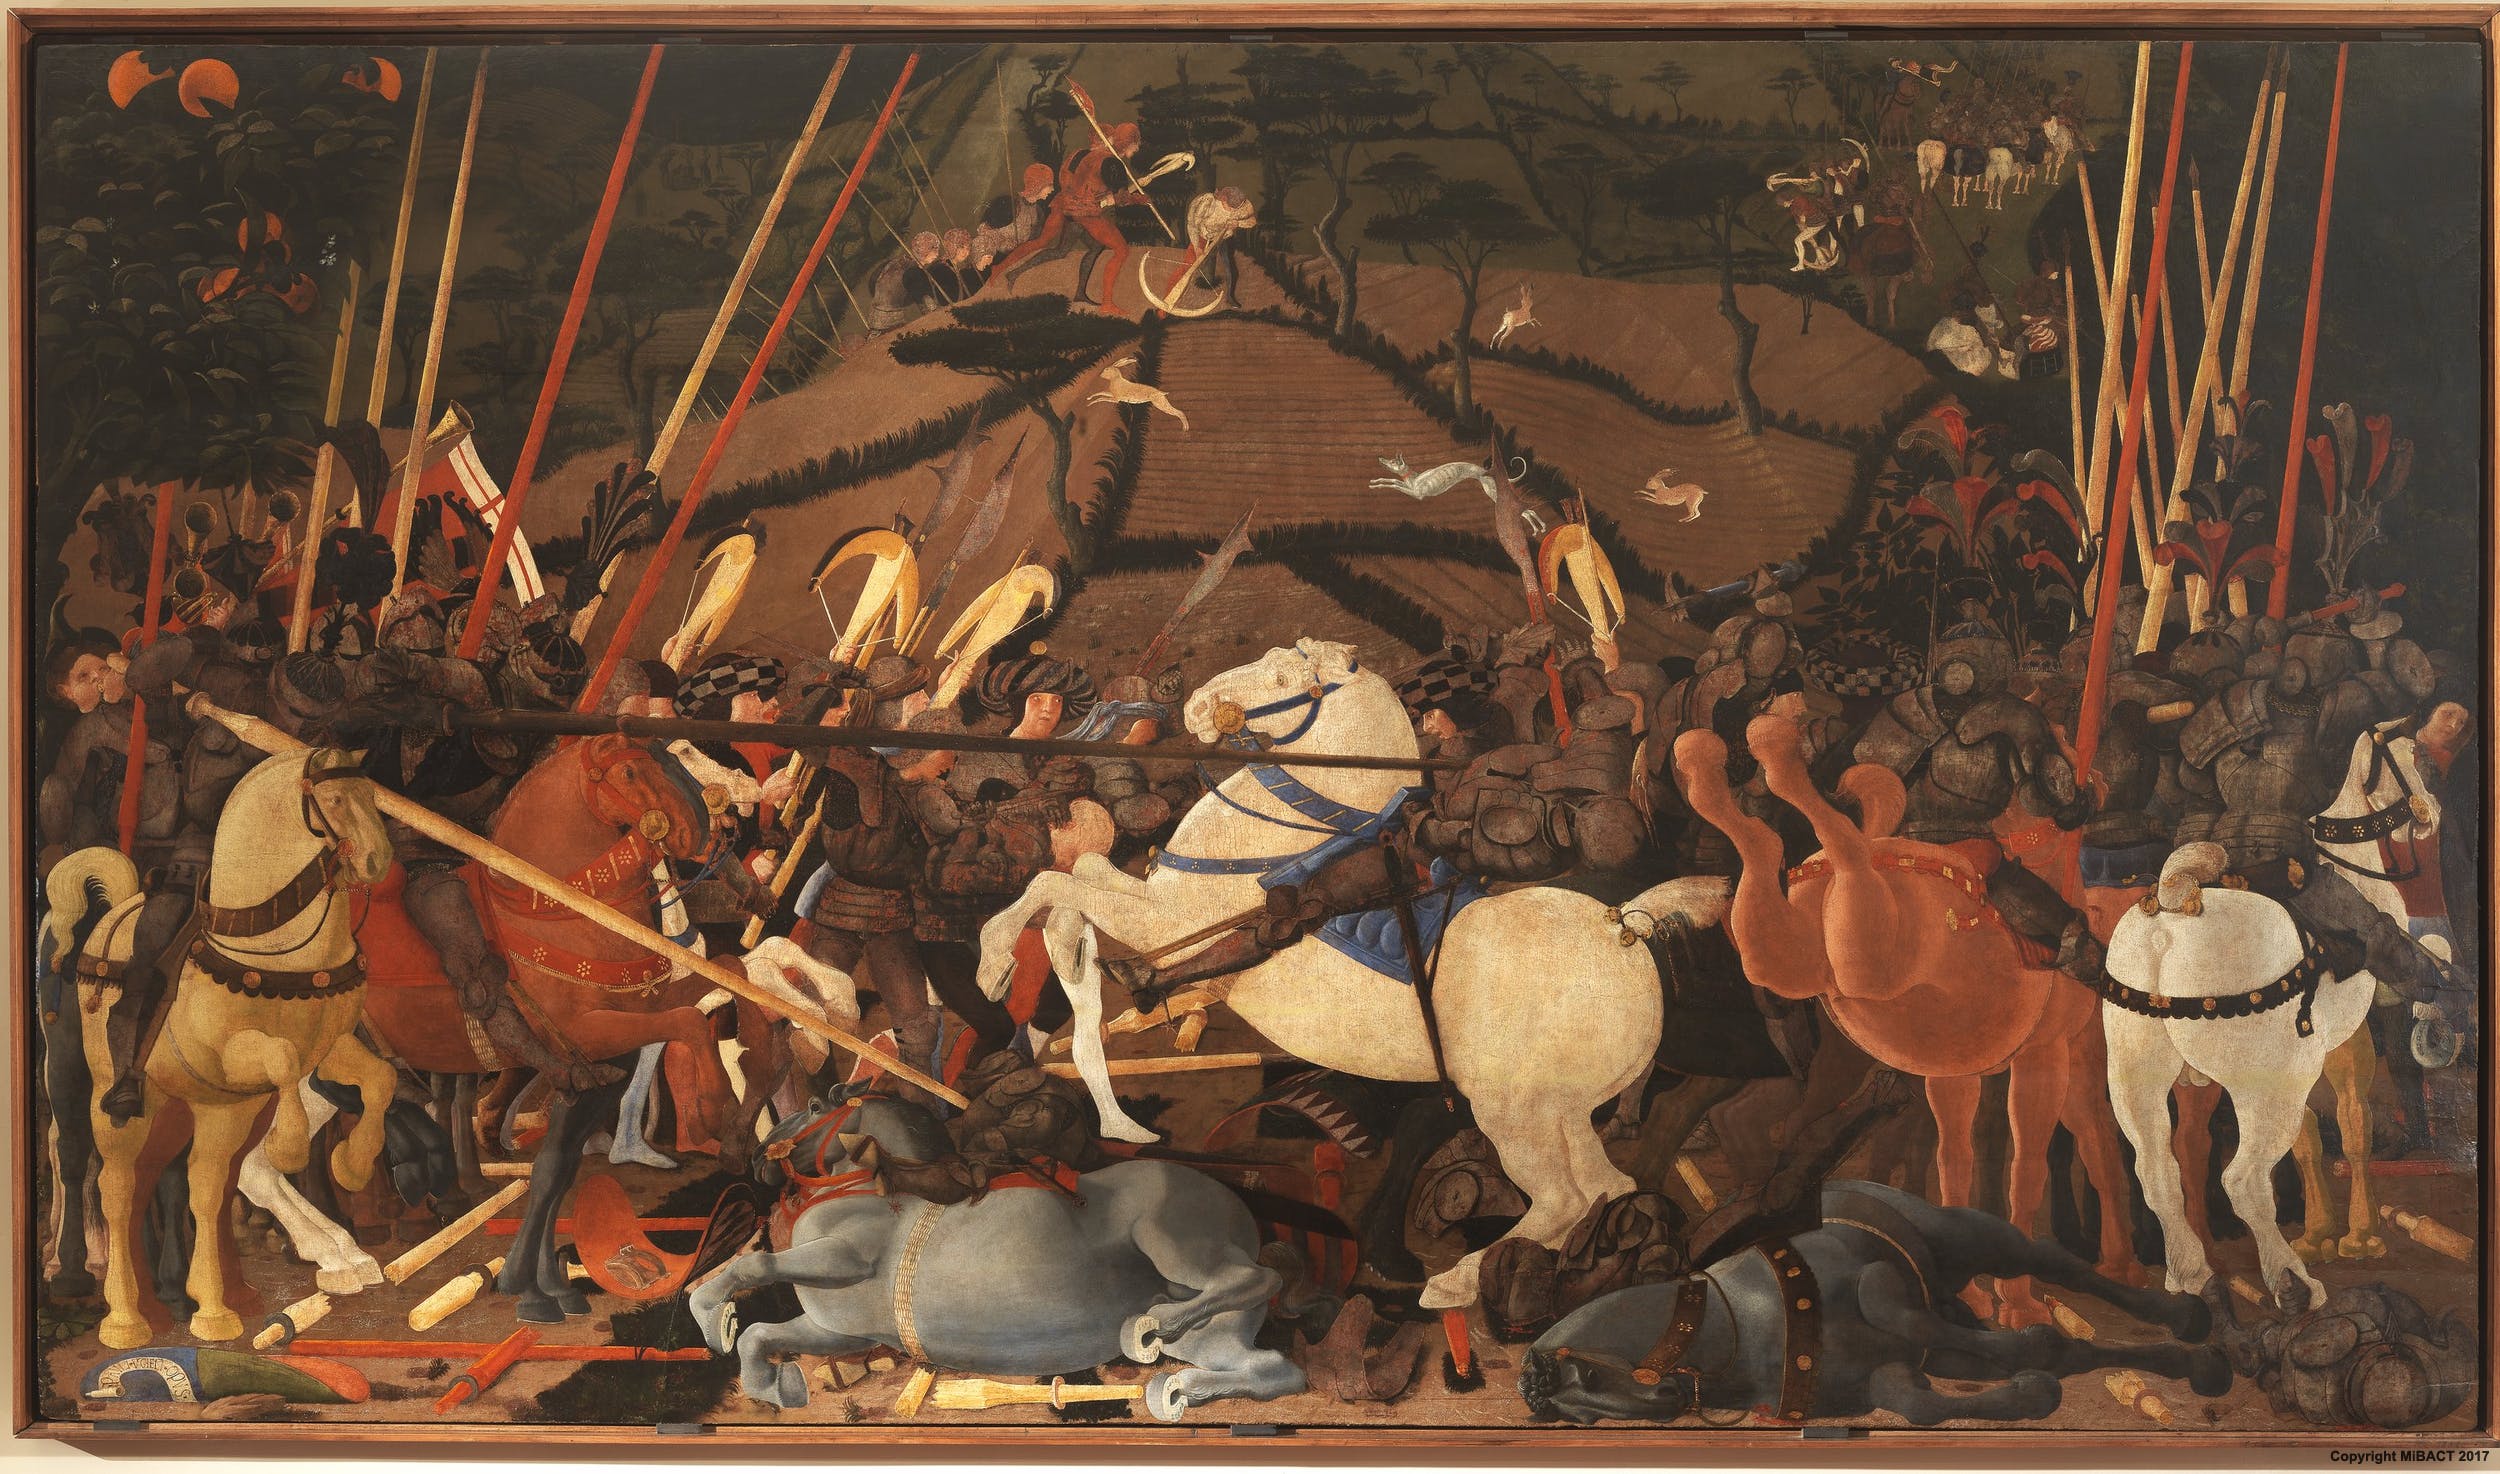 Paolo Uccello, La Battaglia di San Romano, Il disarcionamento di Bernardino della Carda (1438-1440 circa; tempera su tavola, 182 x 323 cm; Firenze, Galleria degli Uffizi)
